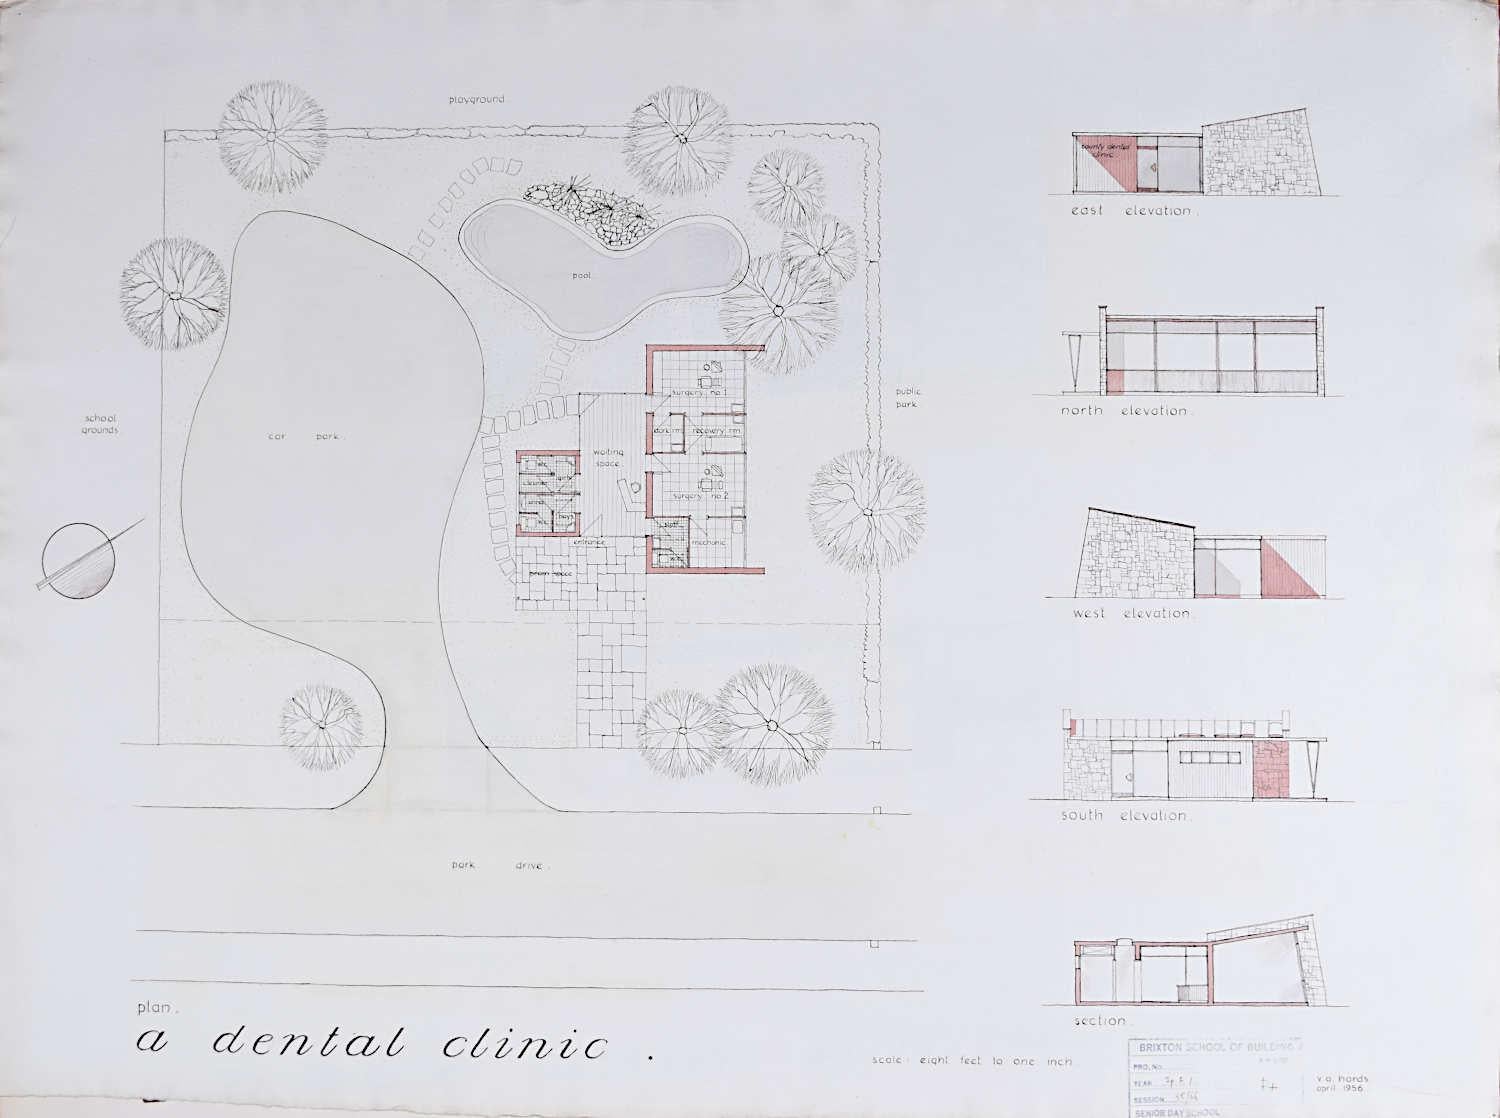 Landscape Art V A Hards - Conception d'un dessin architectural de chirurgie dentaire moderniste du milieu du sicle dernier